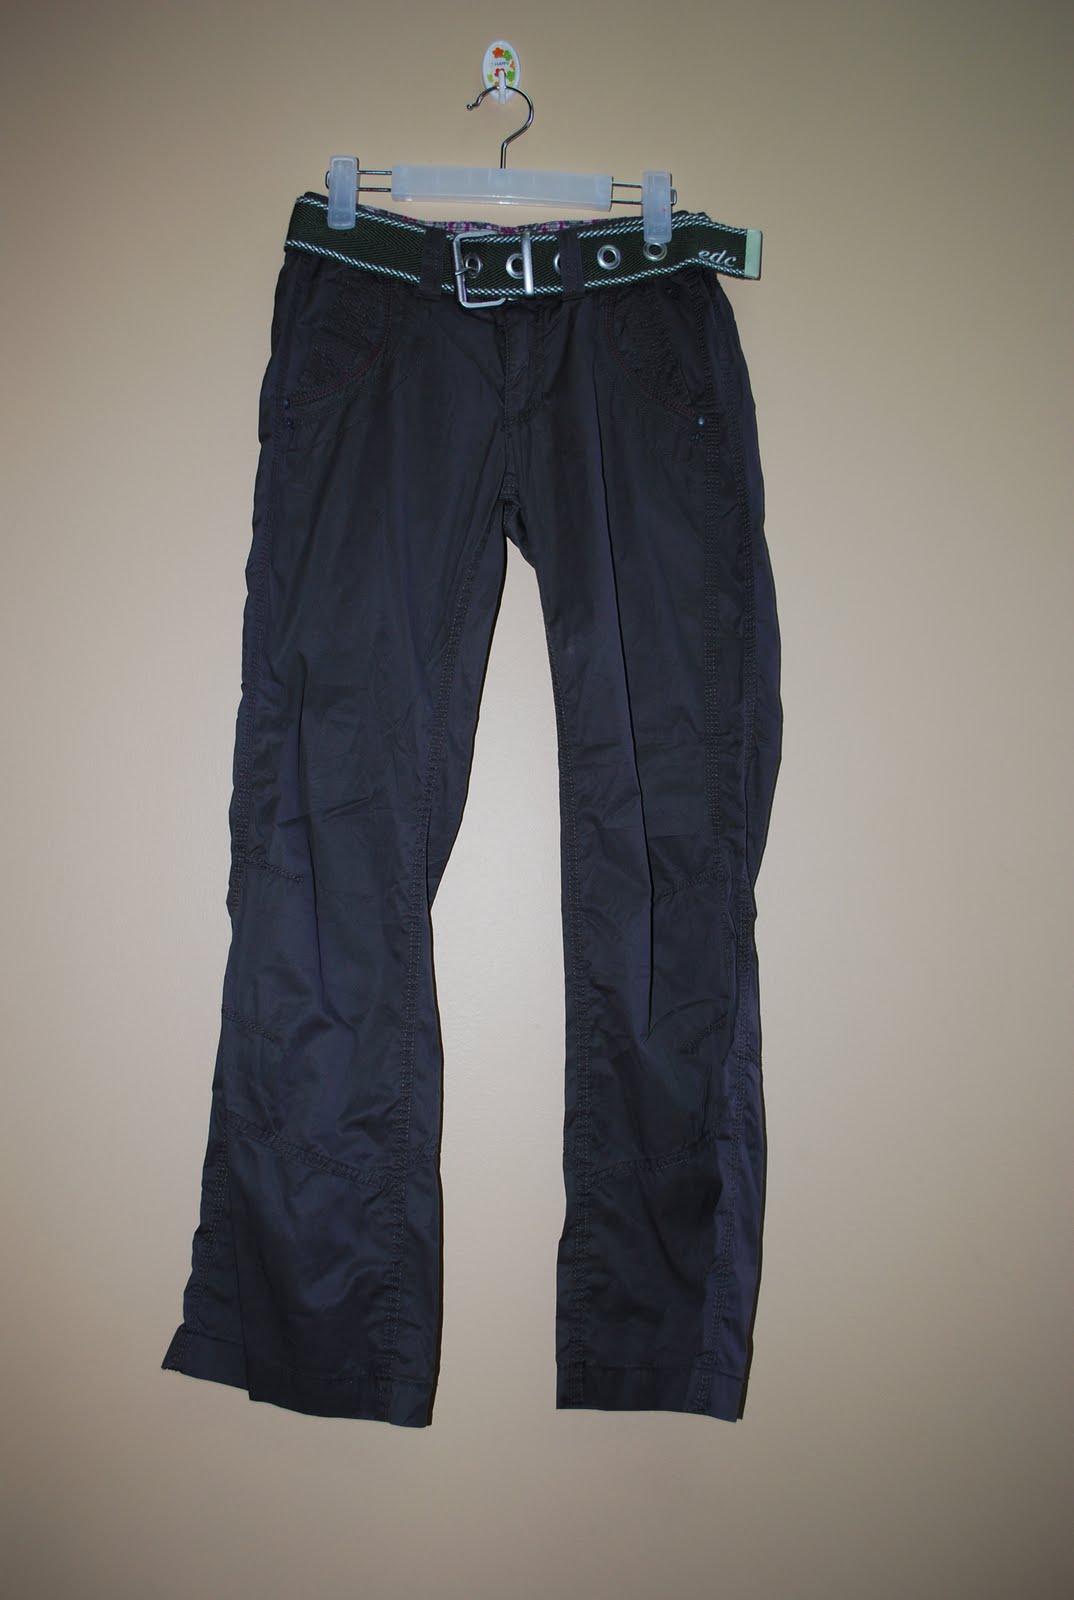 Meez Collections: Esprit EDC Long Pants - Ladies